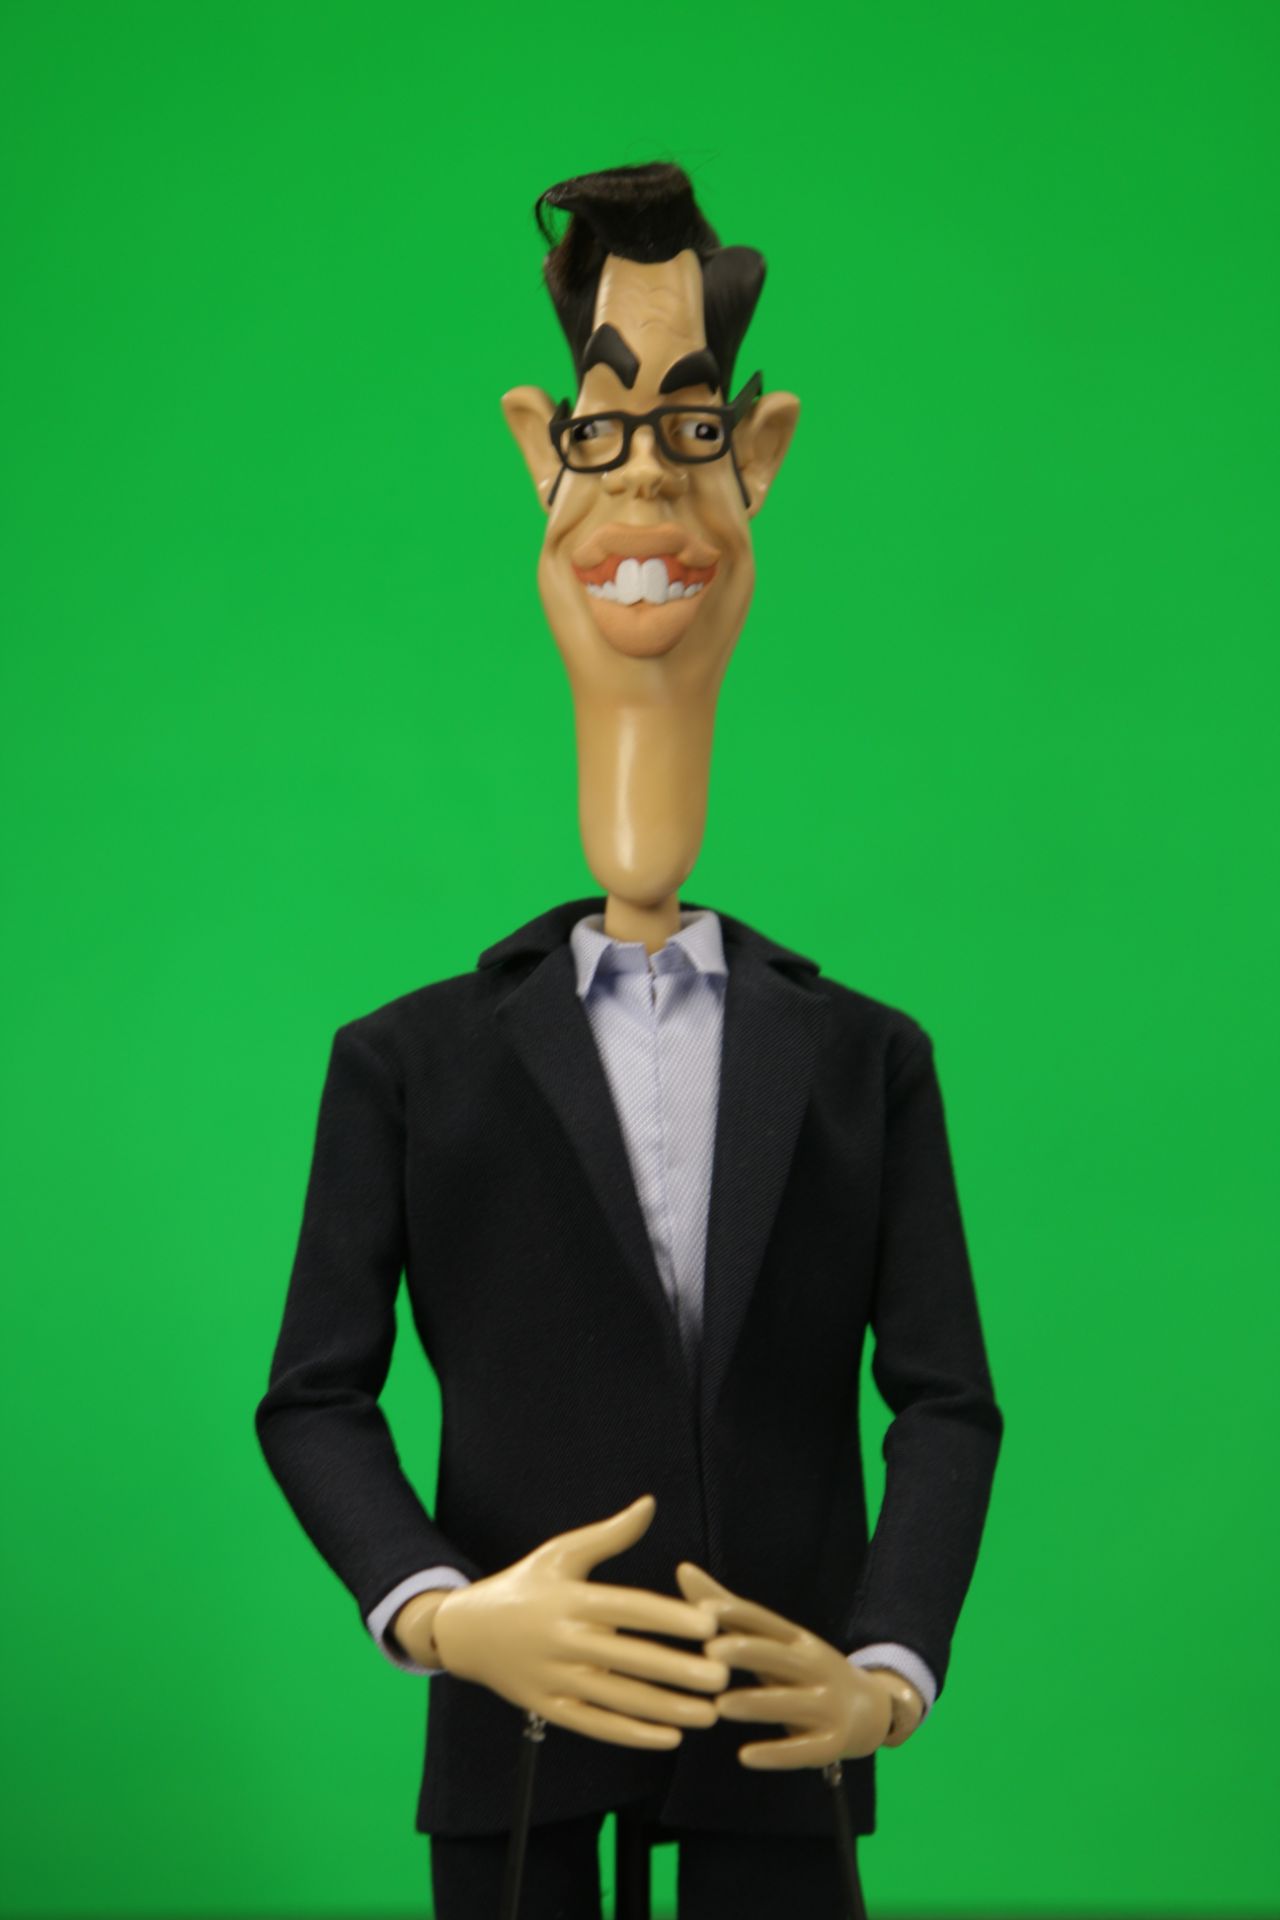 Newzoid puppet - Richard Osman